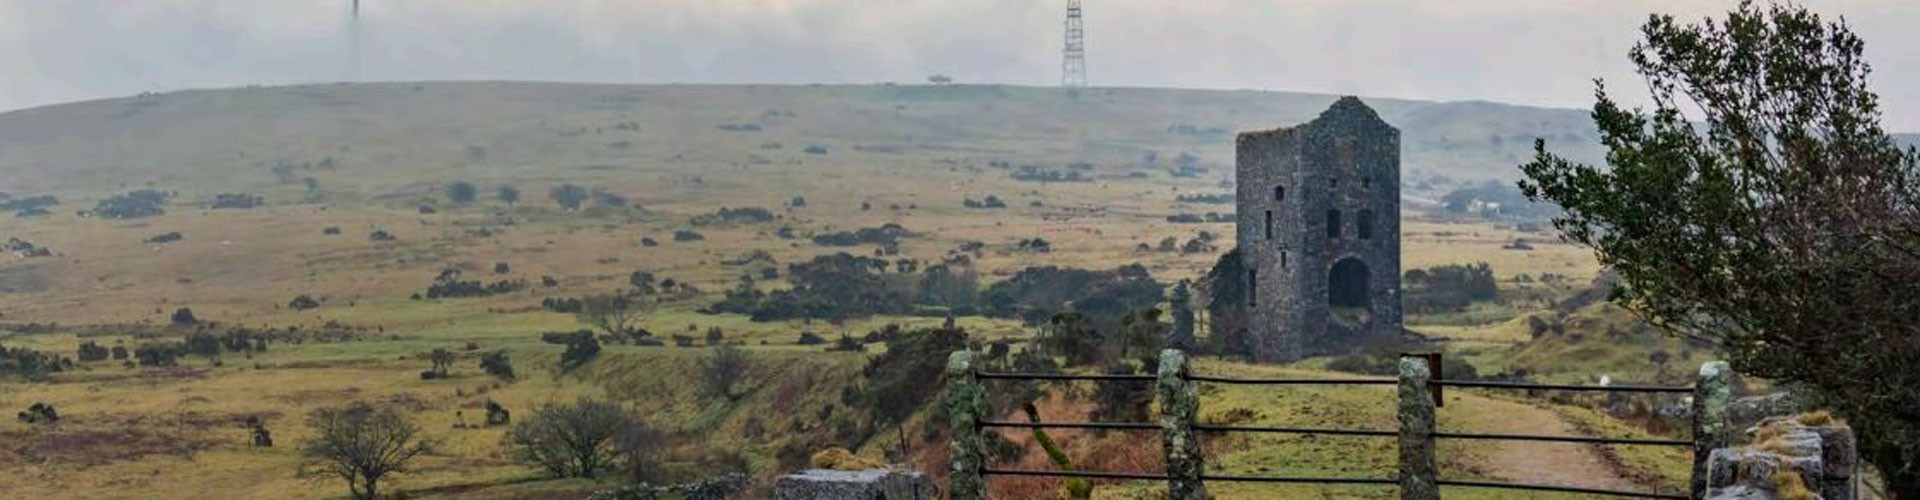 Cornish Mining World Heritage Site landscape